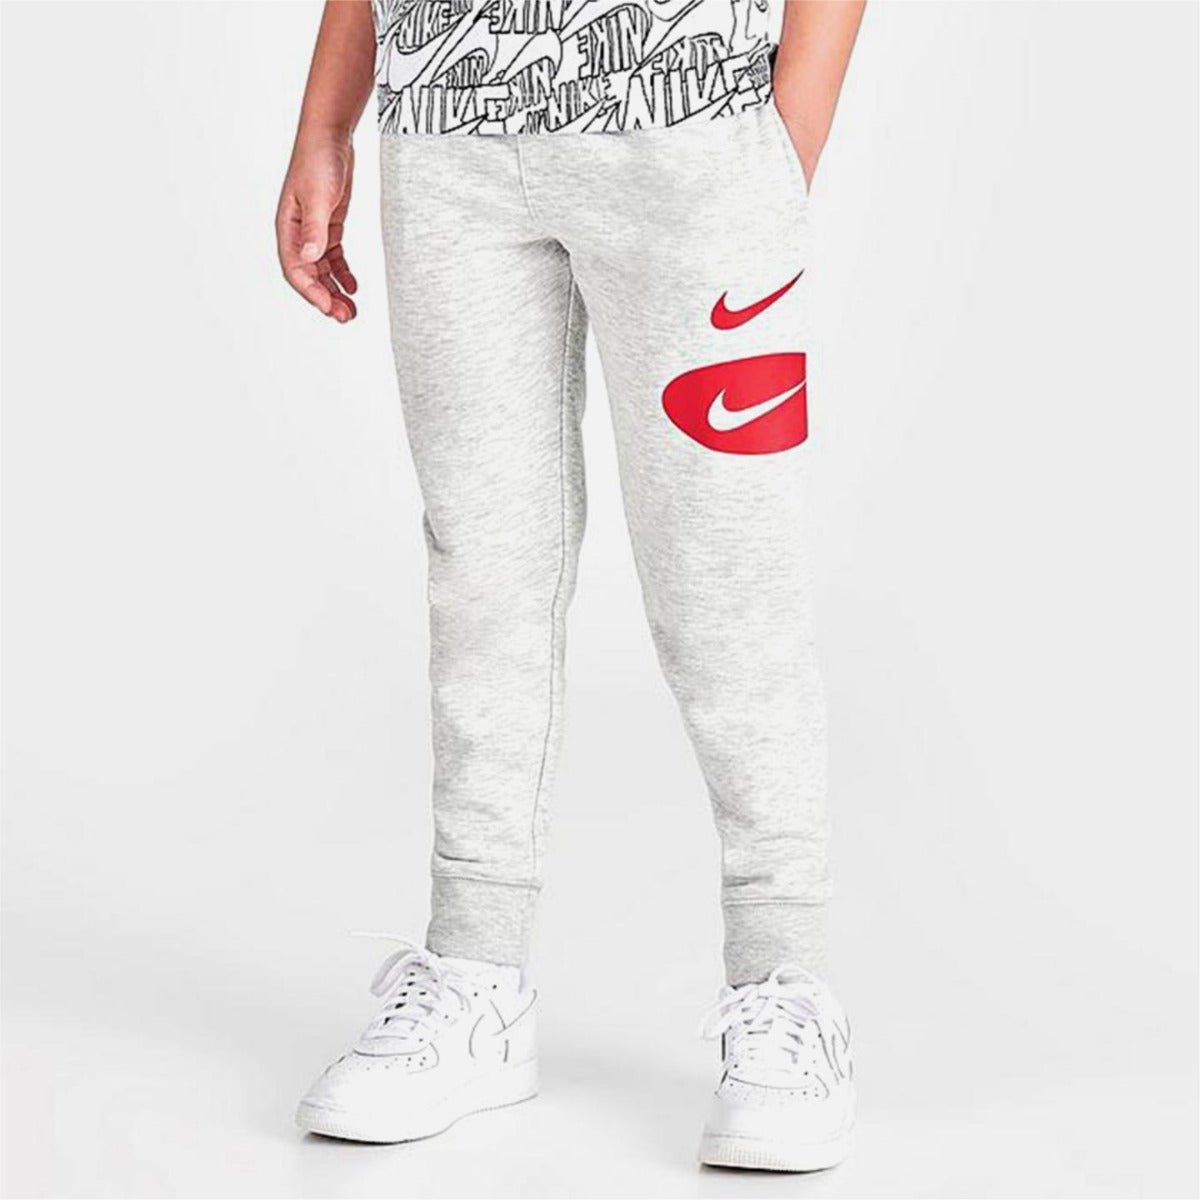 Pantalones Nike Sportswear Niños - Gris/Rojo